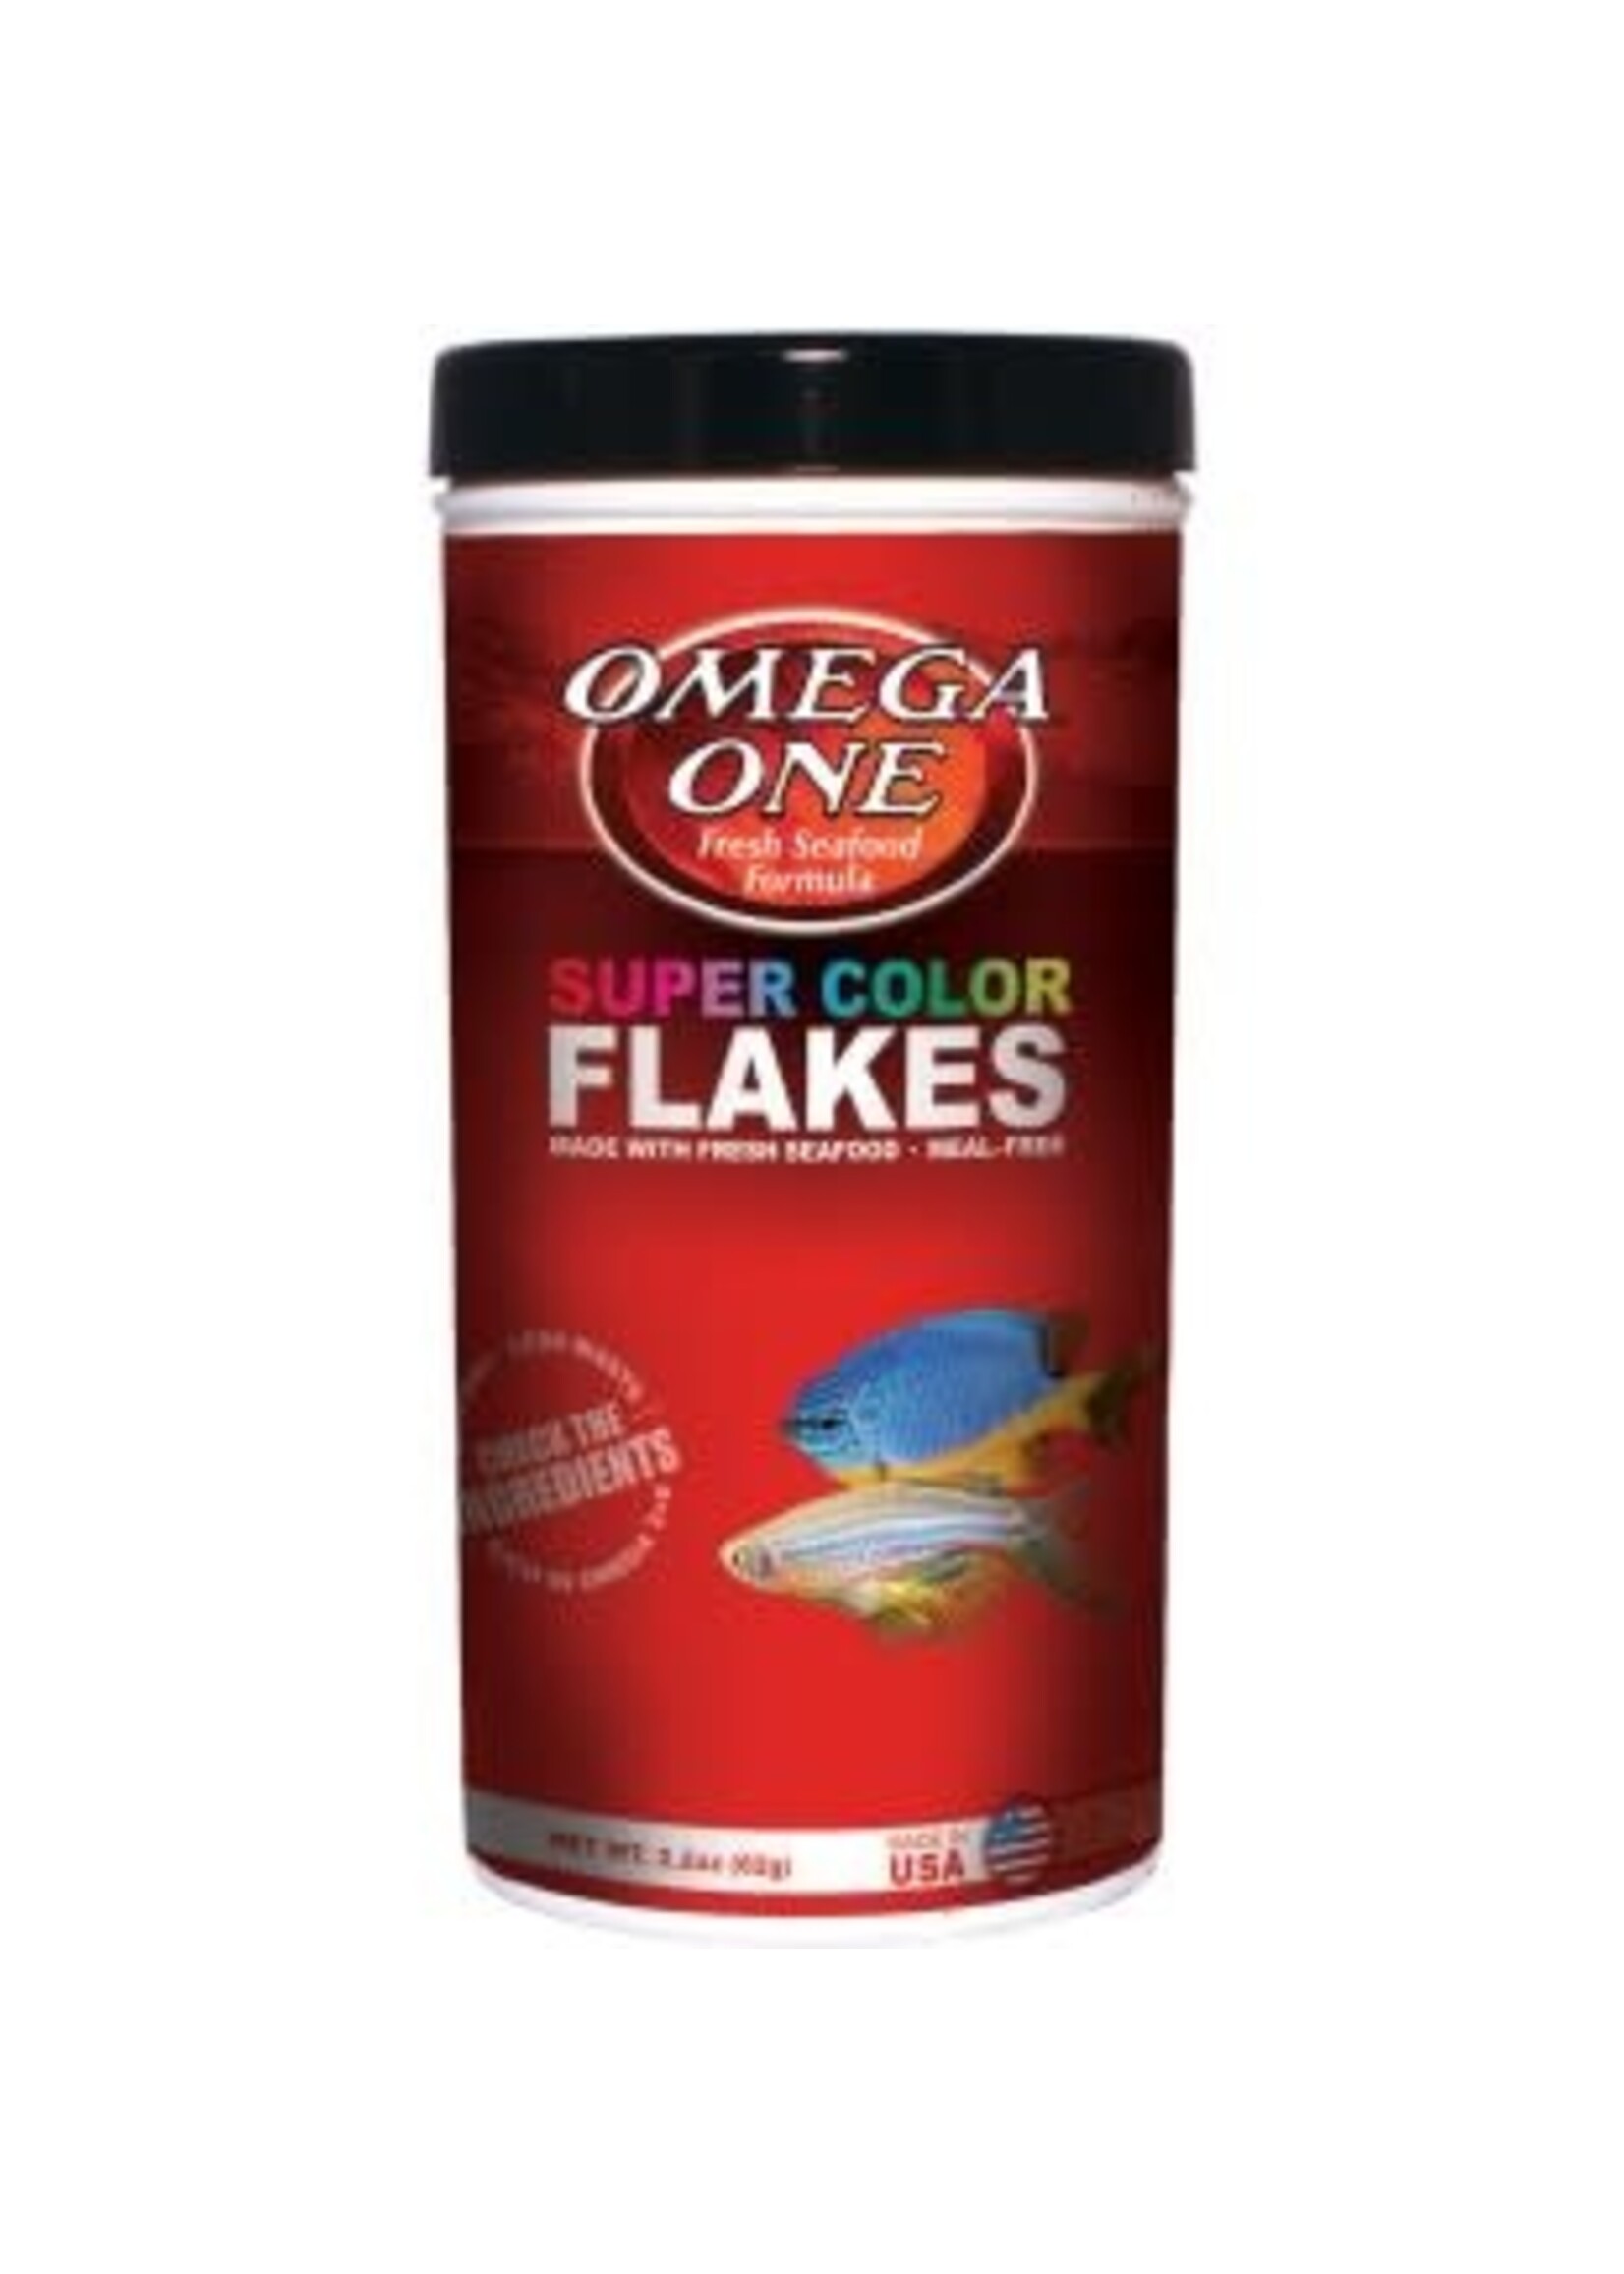 Omega One Omega One Super Color Flakes